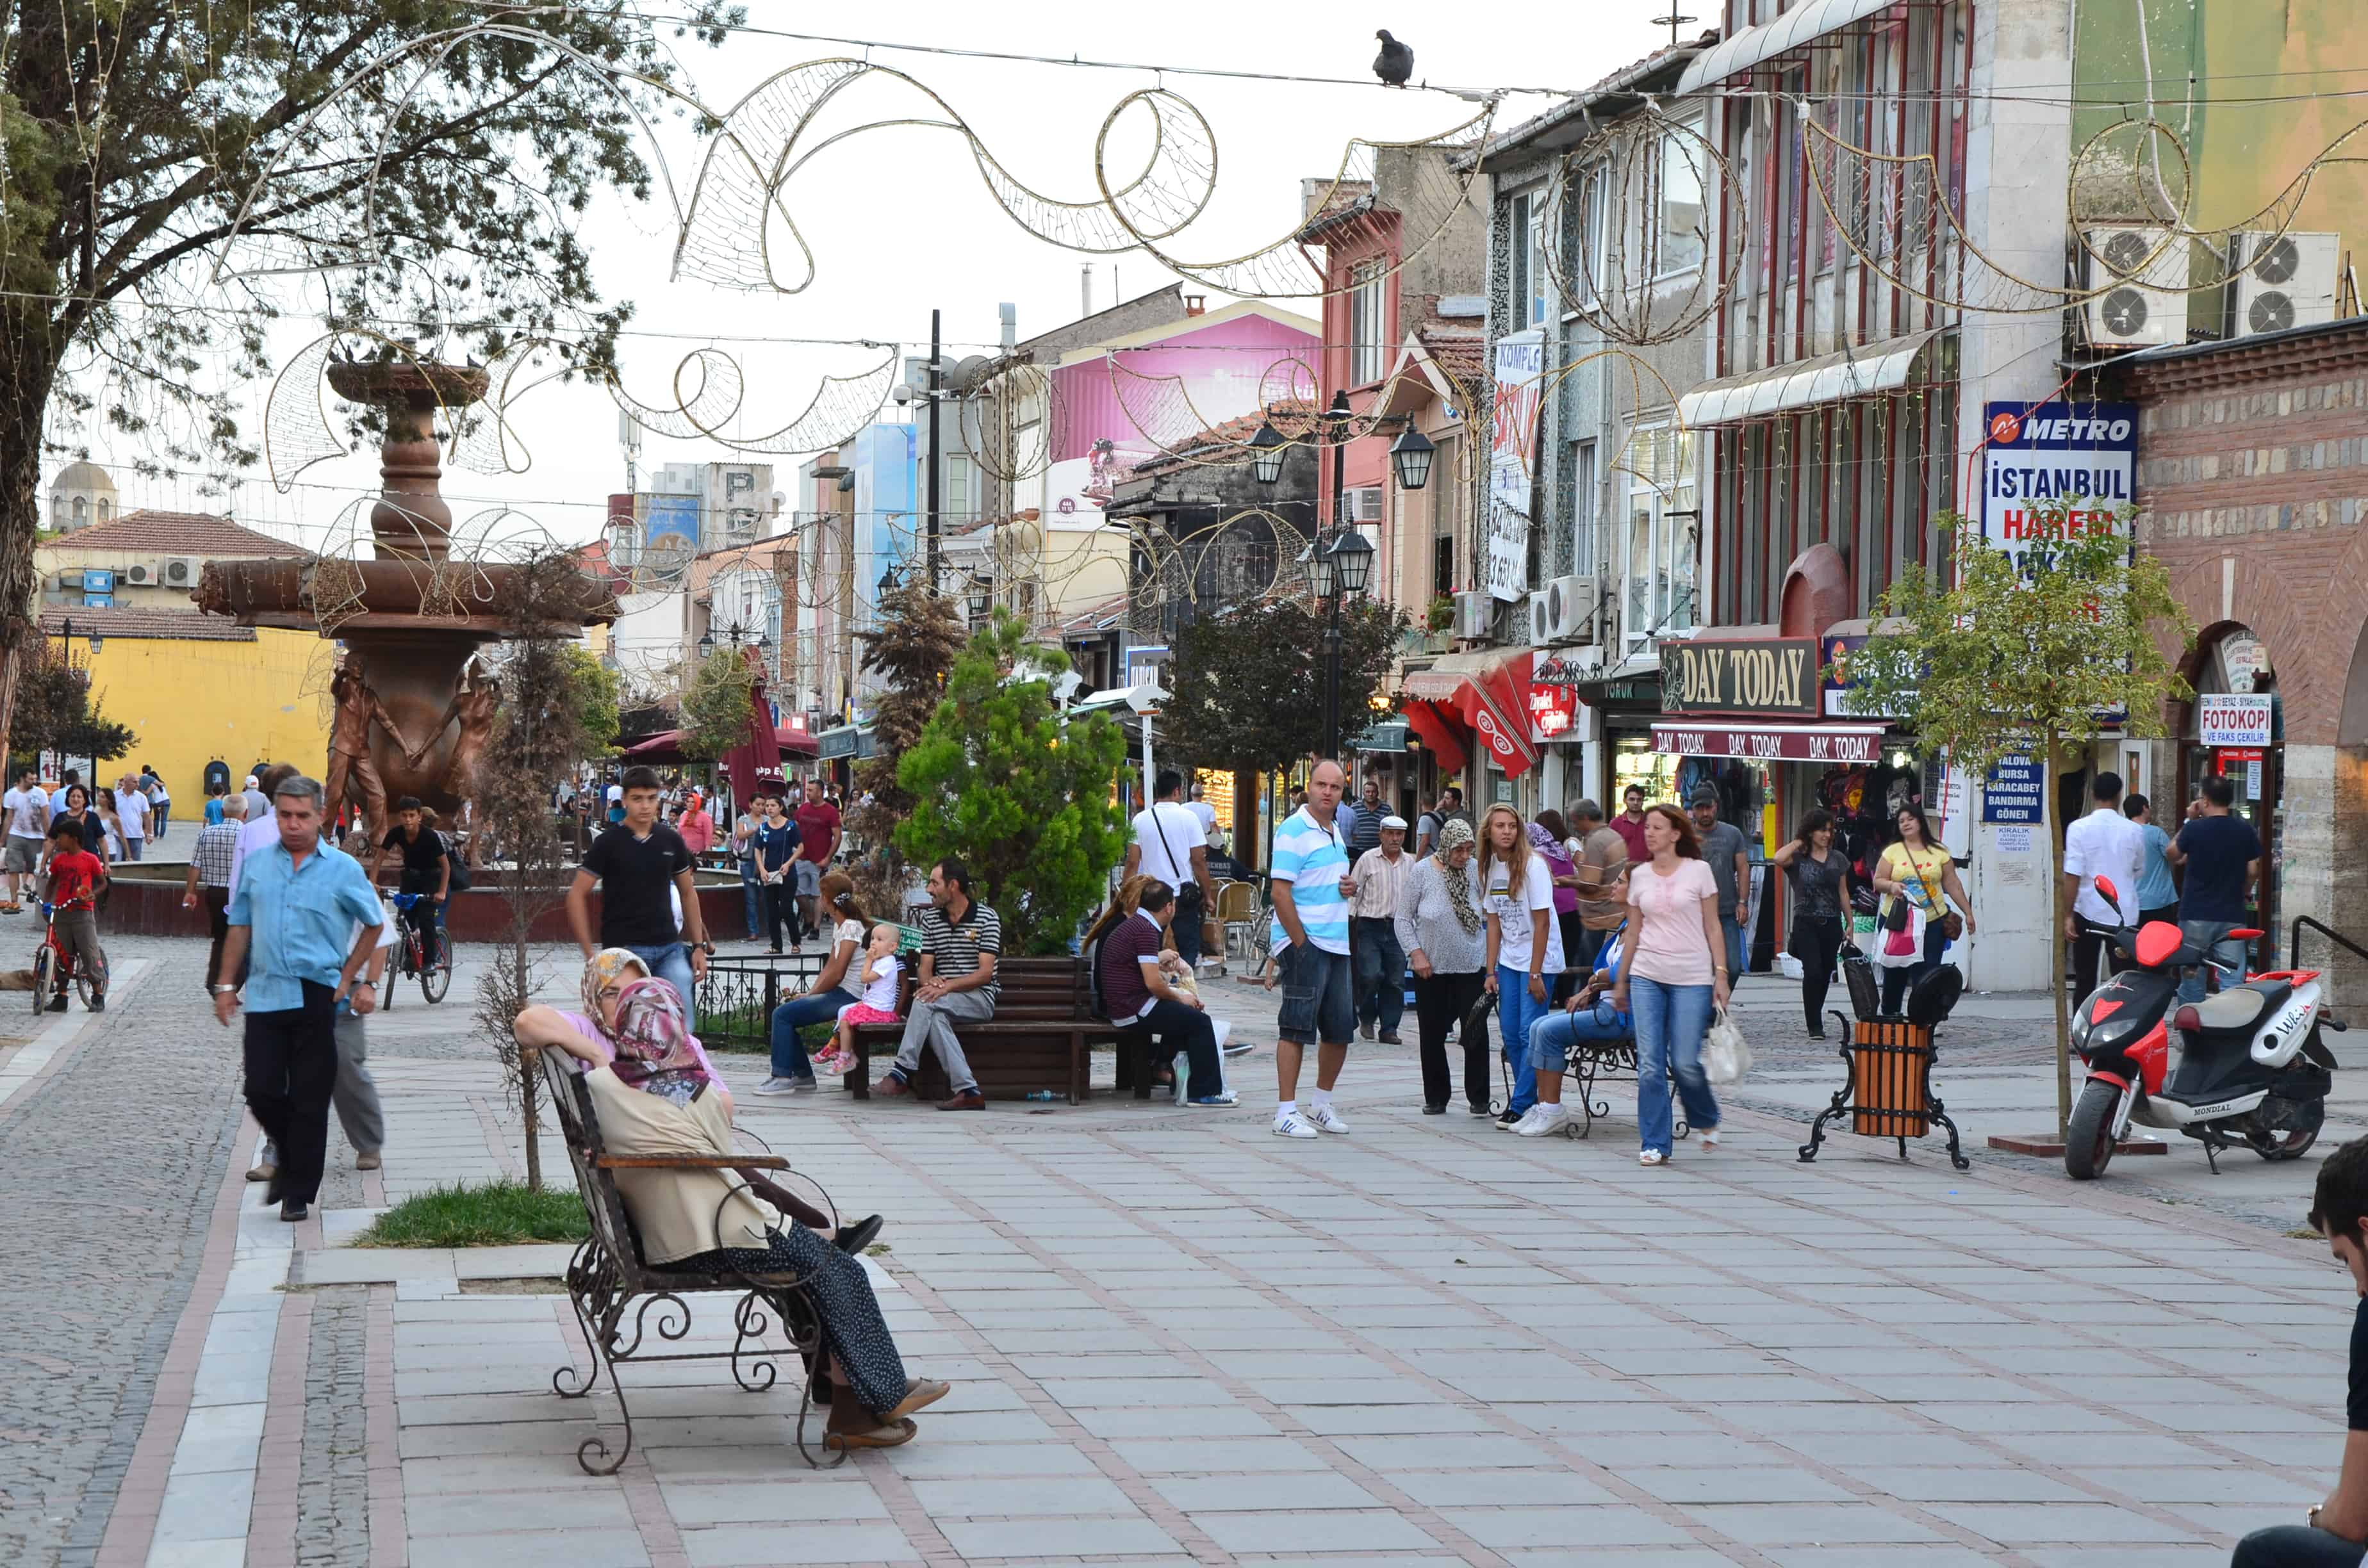 Saraçlar Street in Edirne, Turkey